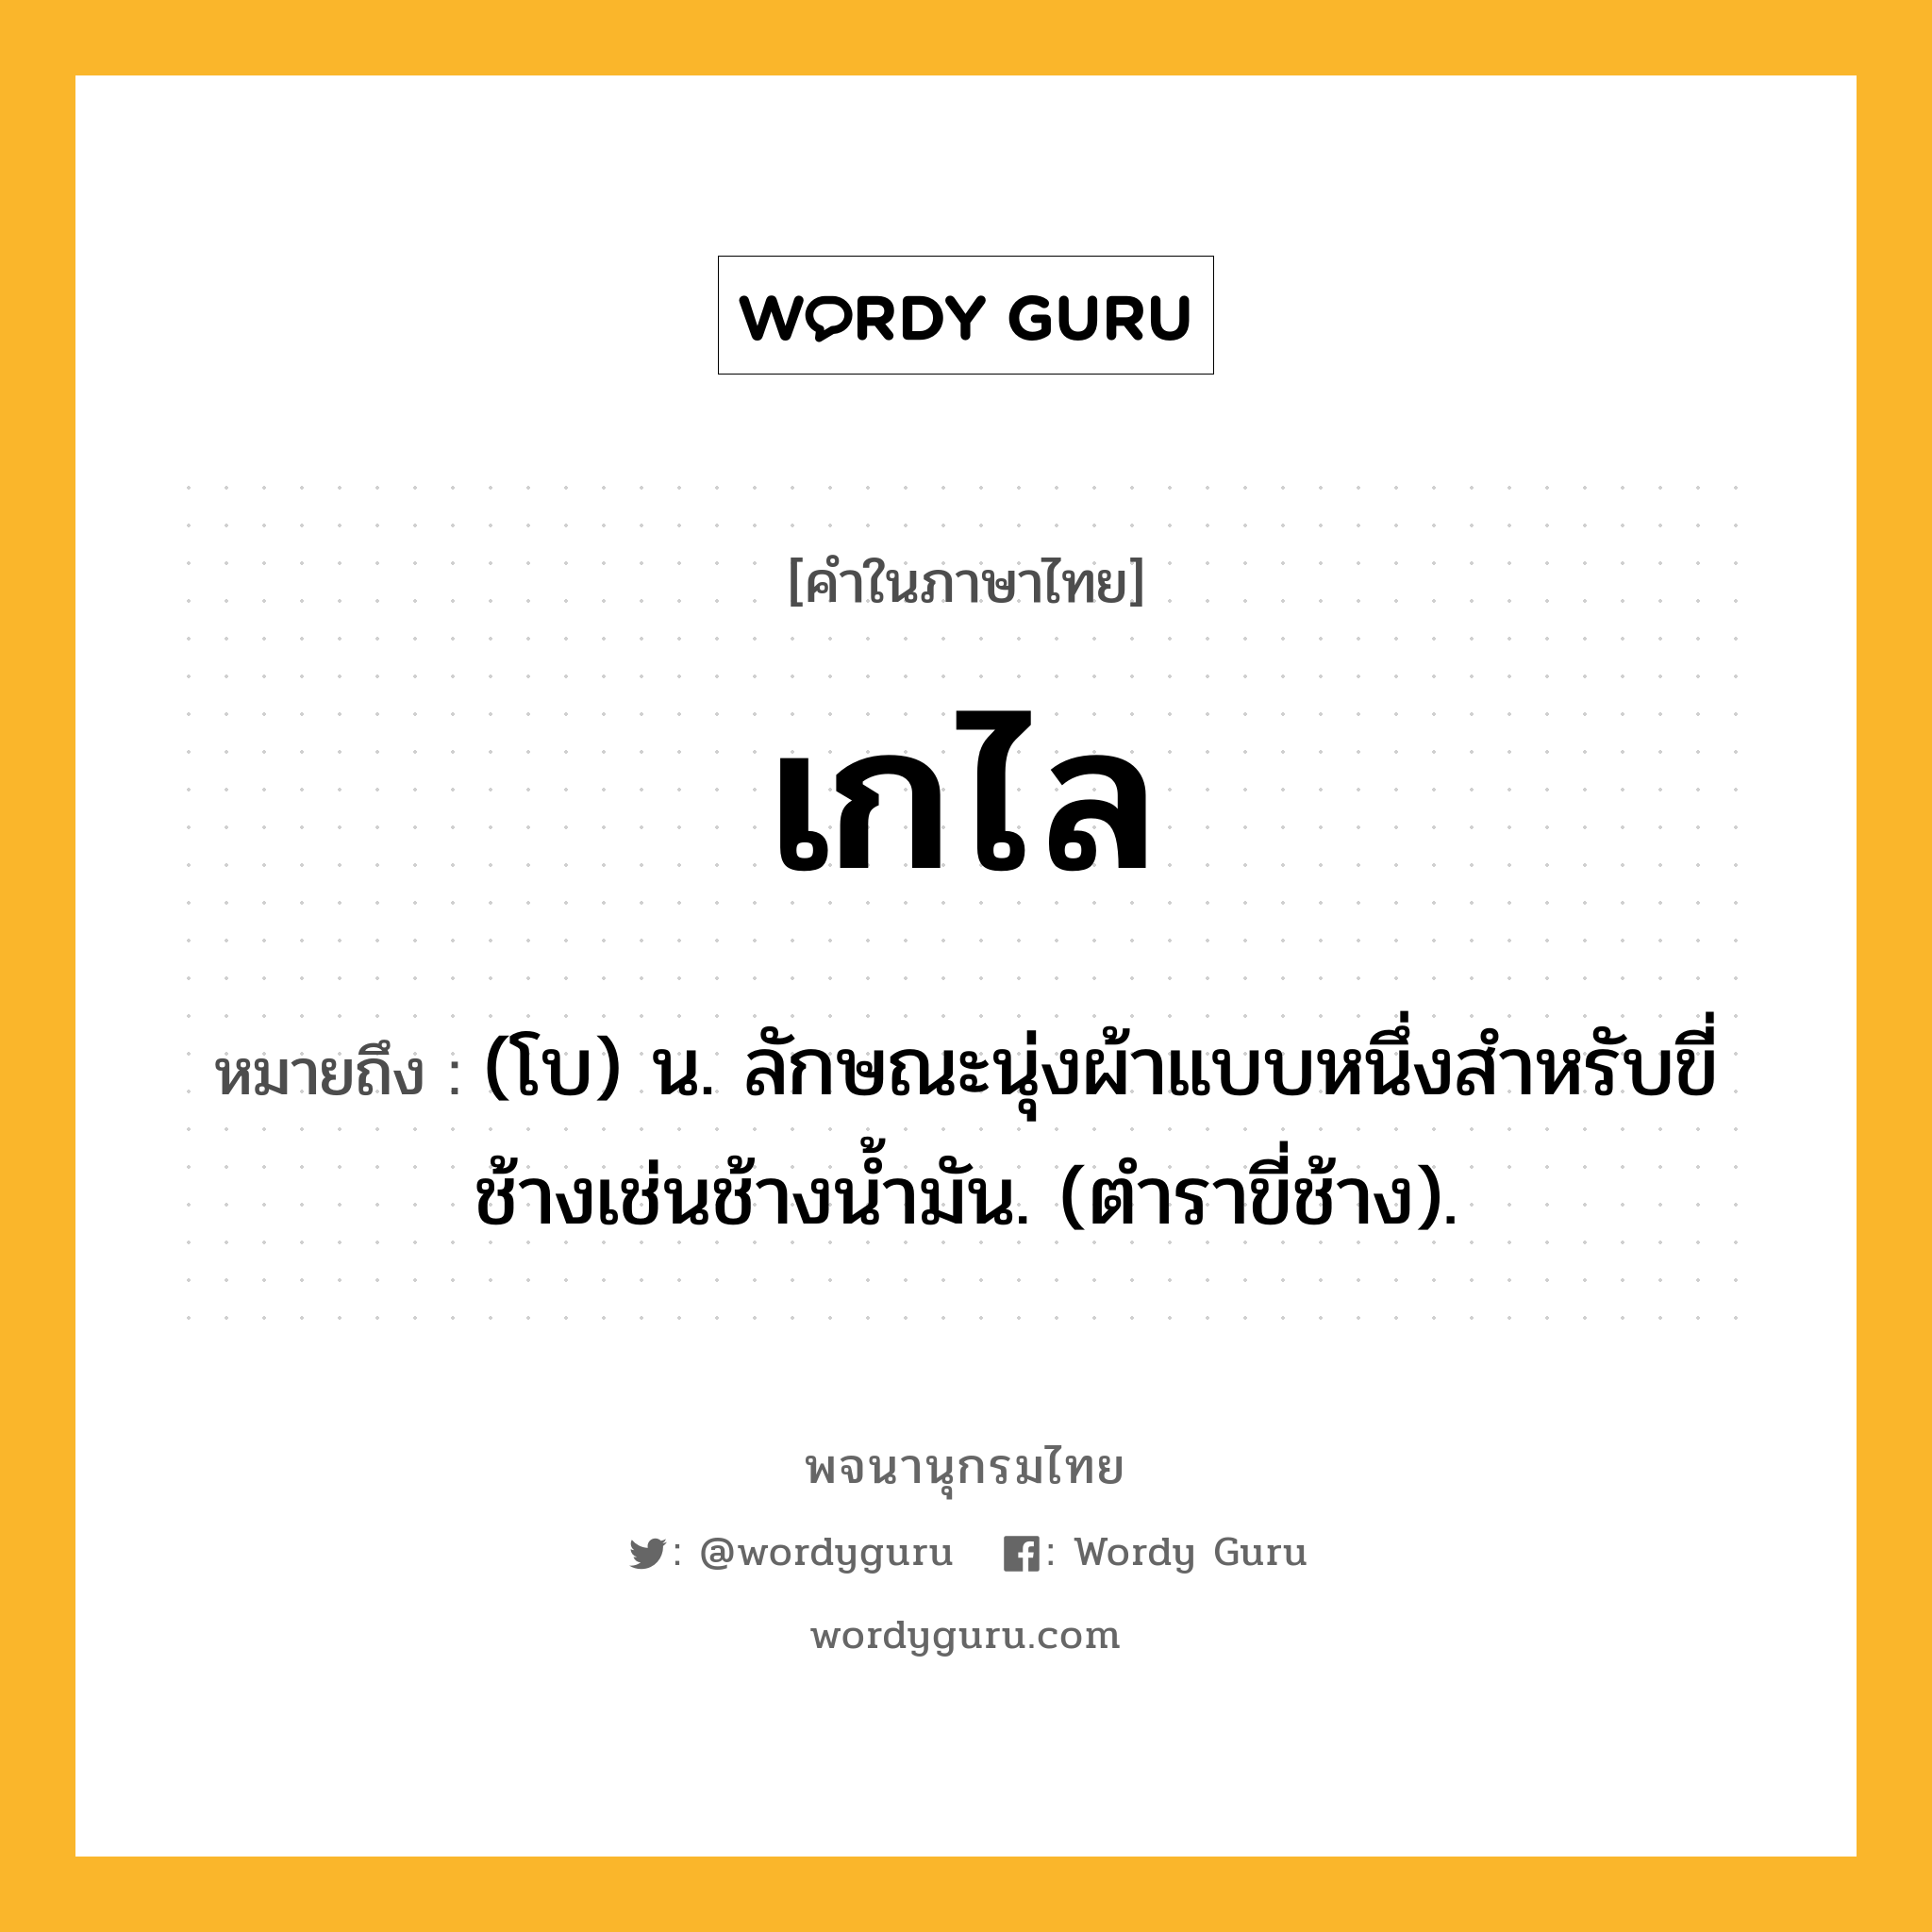 เกไล หมายถึงอะไร?, คำในภาษาไทย เกไล หมายถึง (โบ) น. ลักษณะนุ่งผ้าแบบหนึ่งสําหรับขี่ช้างเช่นช้างนํ้ามัน. (ตําราขี่ช้าง).